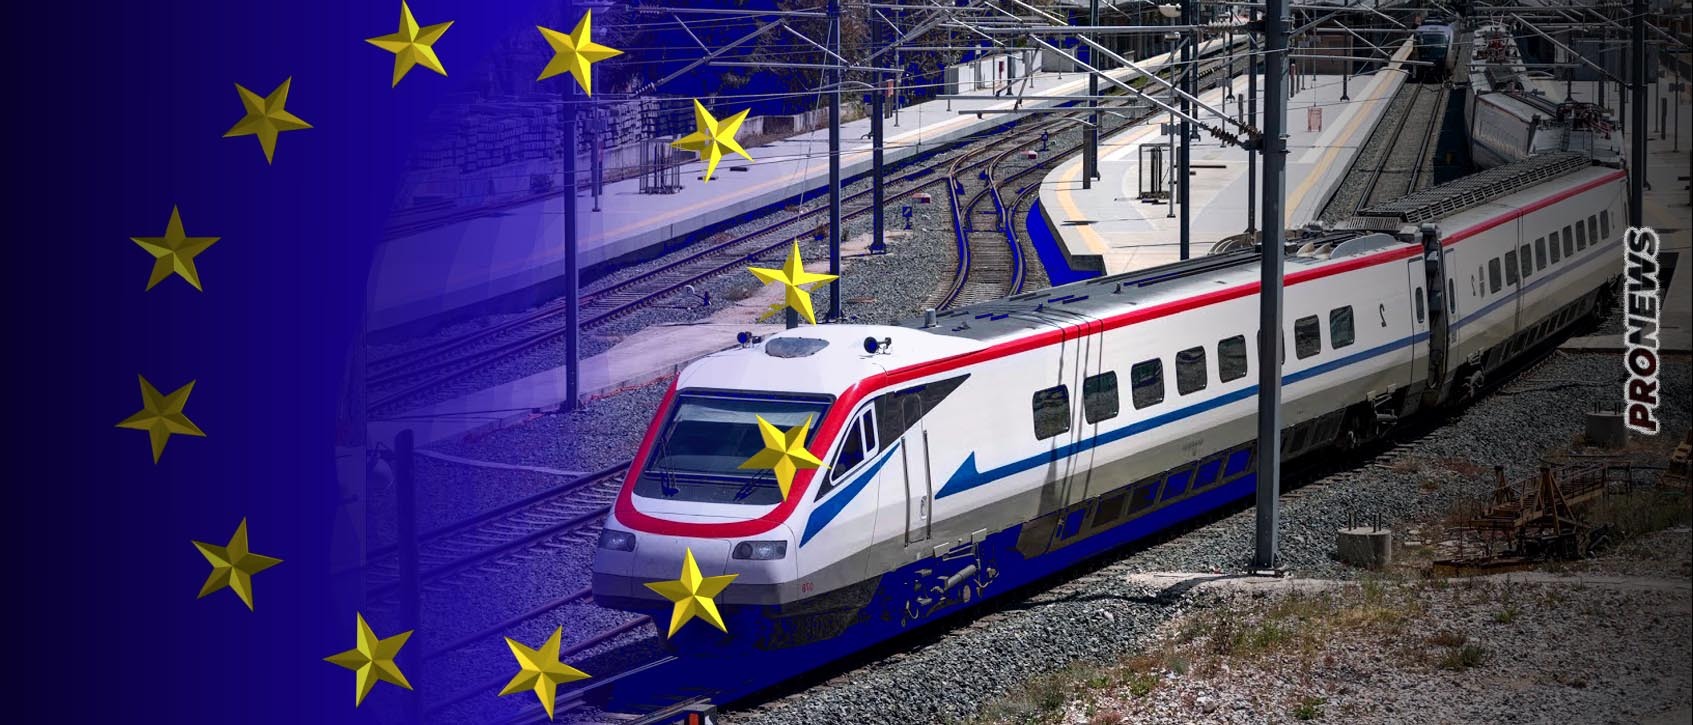 Ιδού οι πραγματικοί ένοχοι: Η ΕΕ «καθίζει» την κυβέρνηση στο «σκαμνί» του ευρωδικαστηρίου για μη συμμόρφωση  για τα «εγκλήματα» στους σιδηροδρόμους